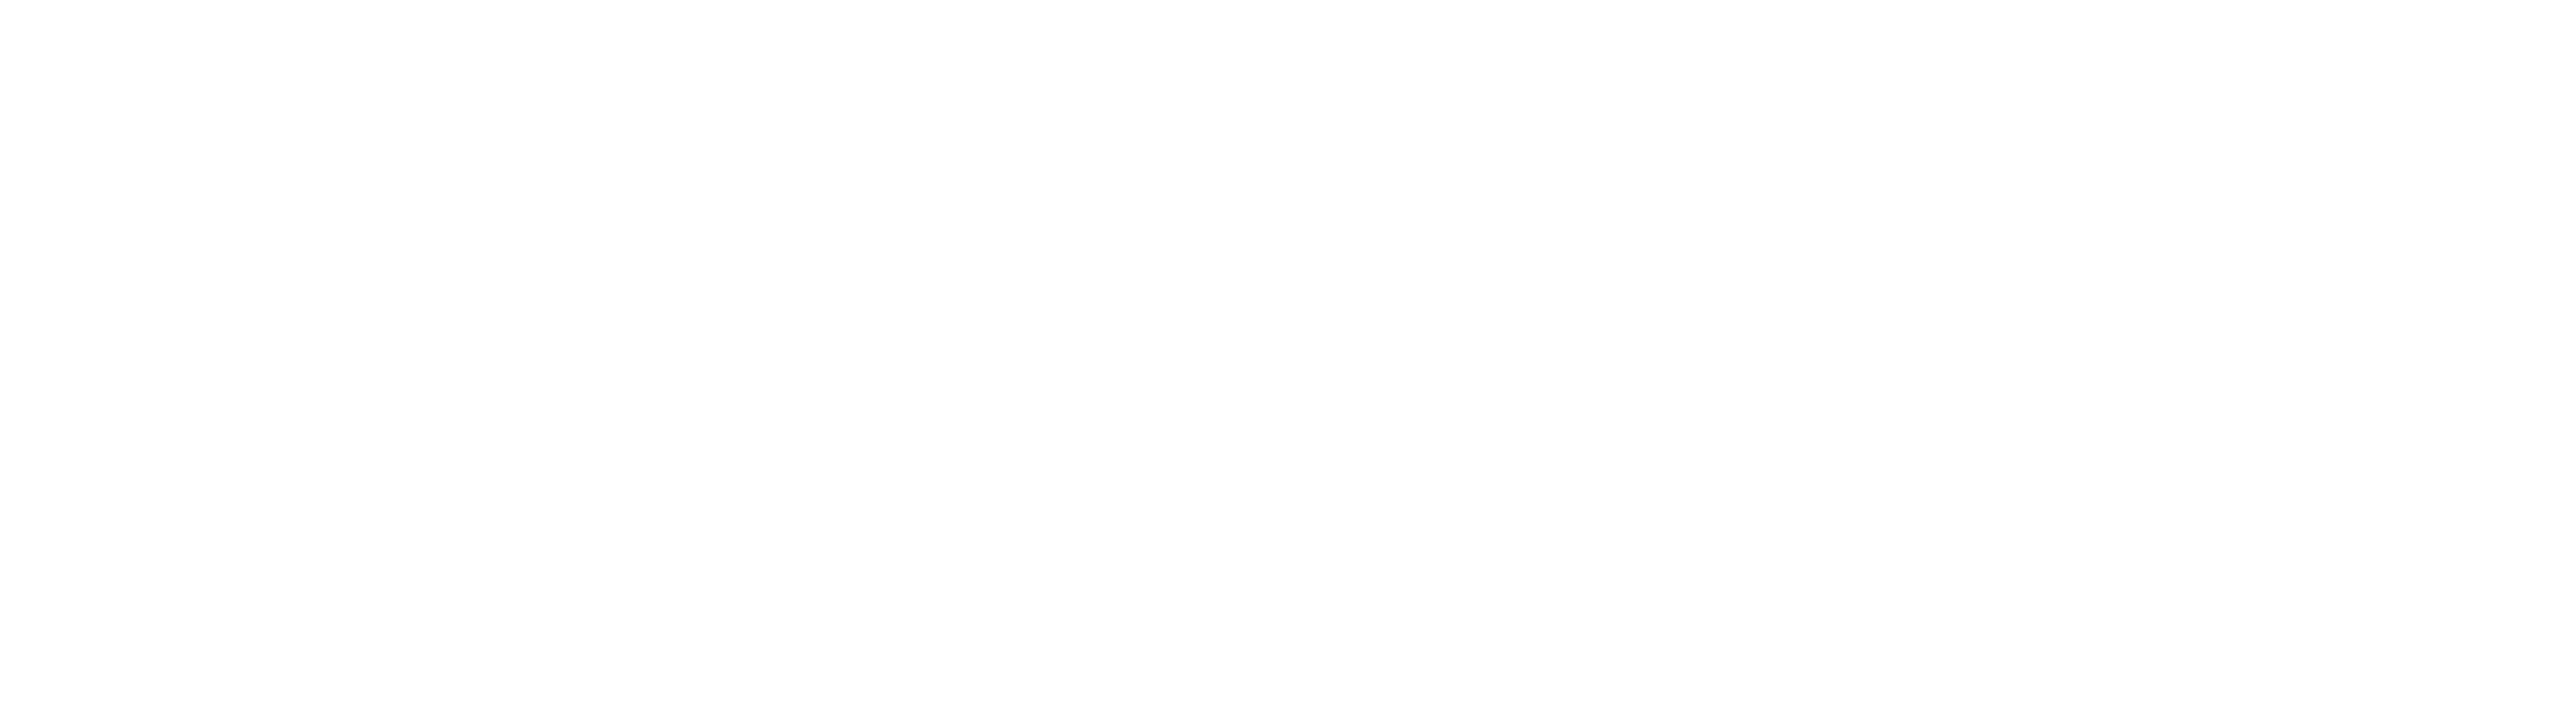 Estação Zootécnica da Madeira Dr. Carlos Dória